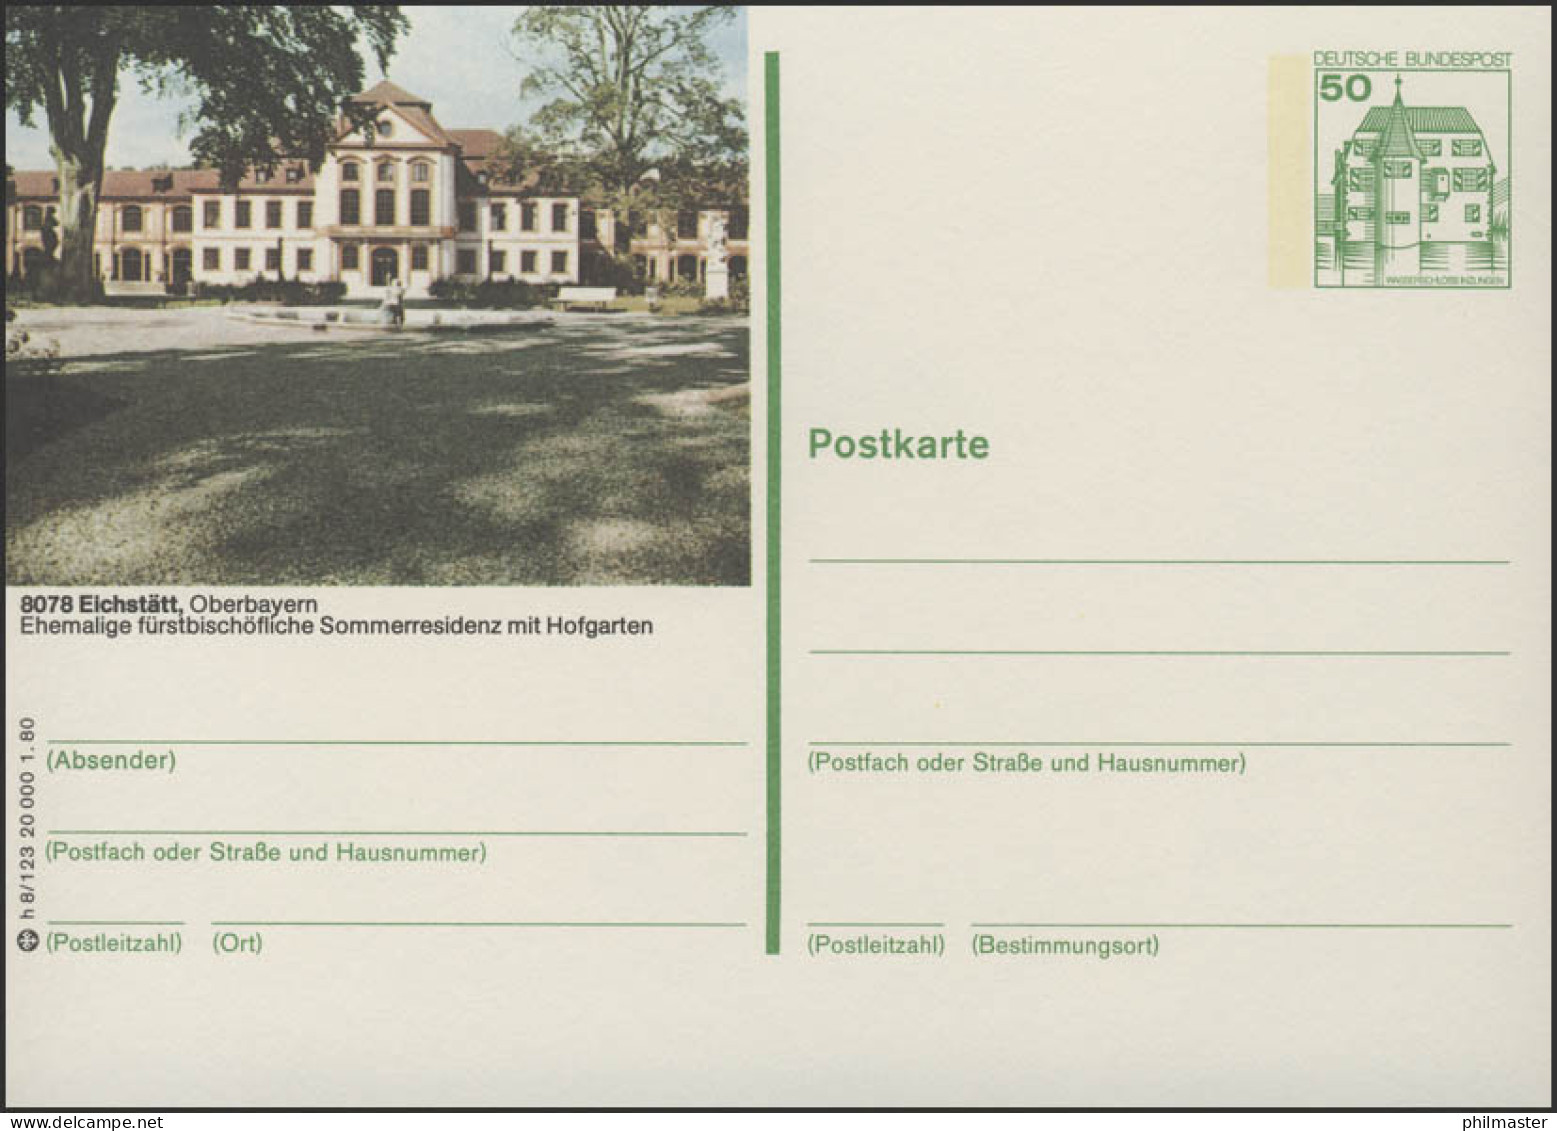 P130-h8/123 - 8078 Eichstädt, Schloß ** - Geïllustreerde Postkaarten - Ongebruikt